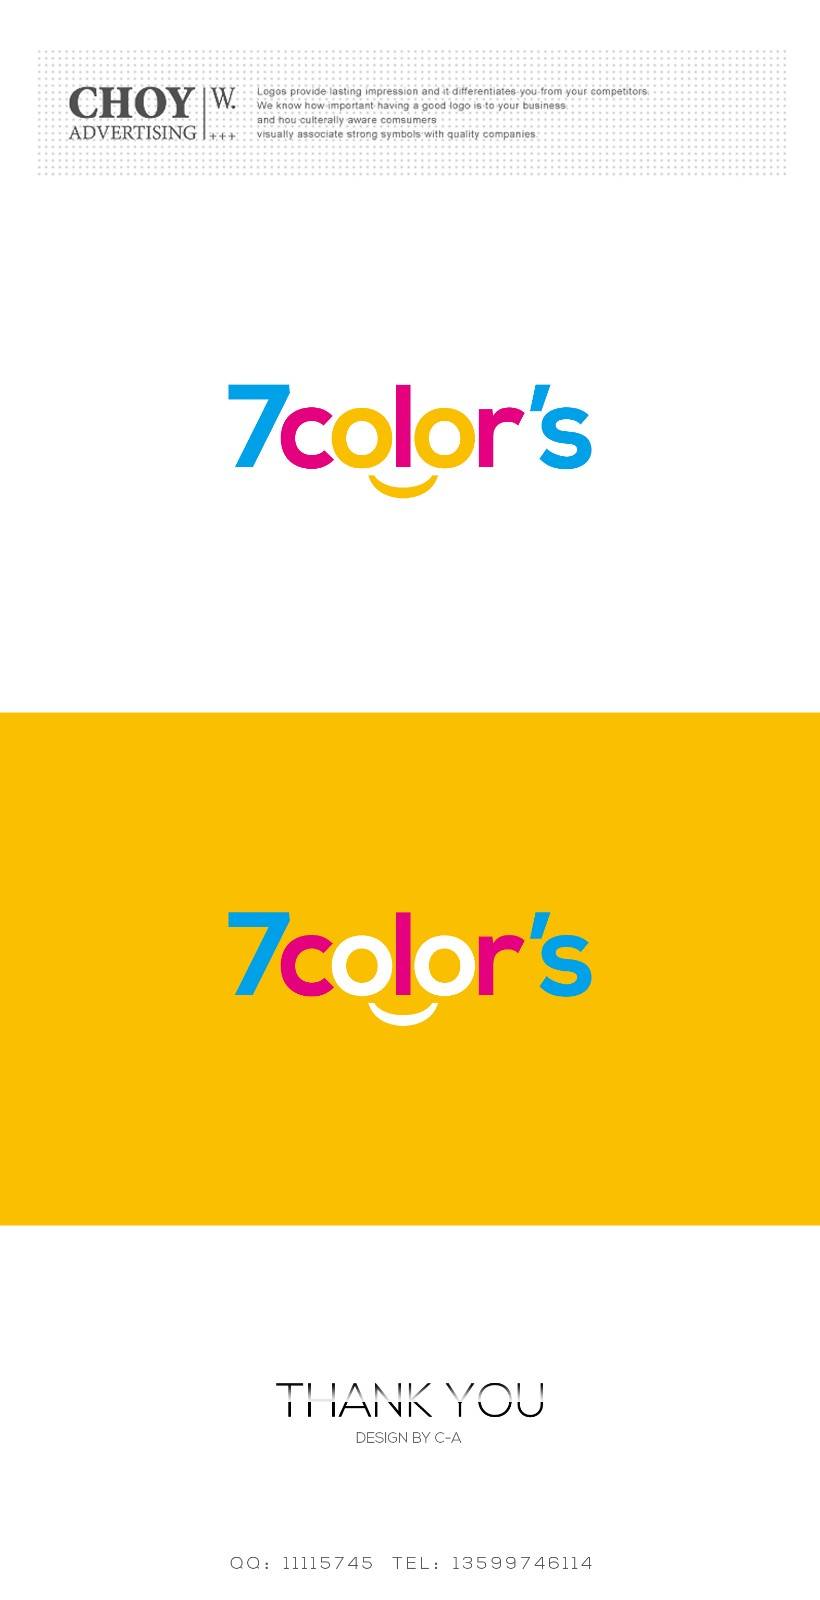 护理福祉服务公司logo设计！ 公司名 7color’s